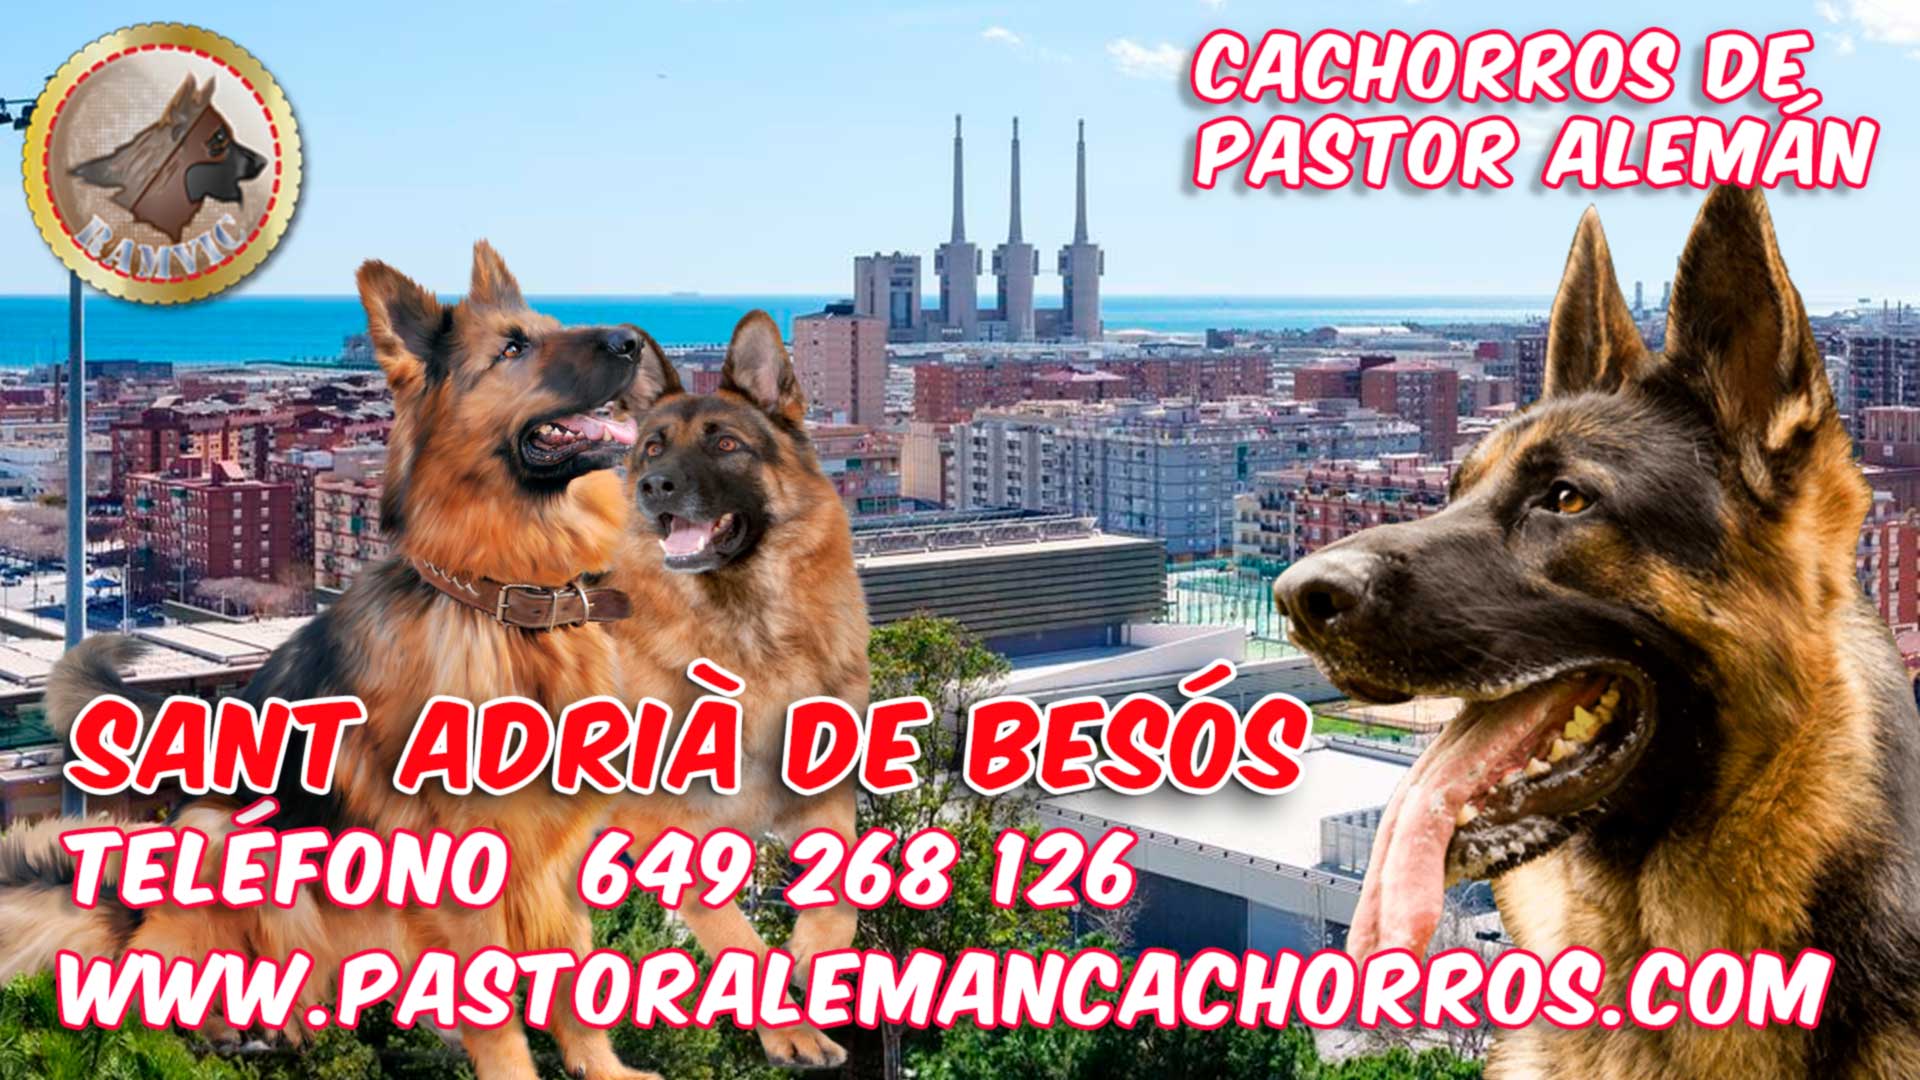 Cachorros de pastor alemán en Sant Adrià de Besós